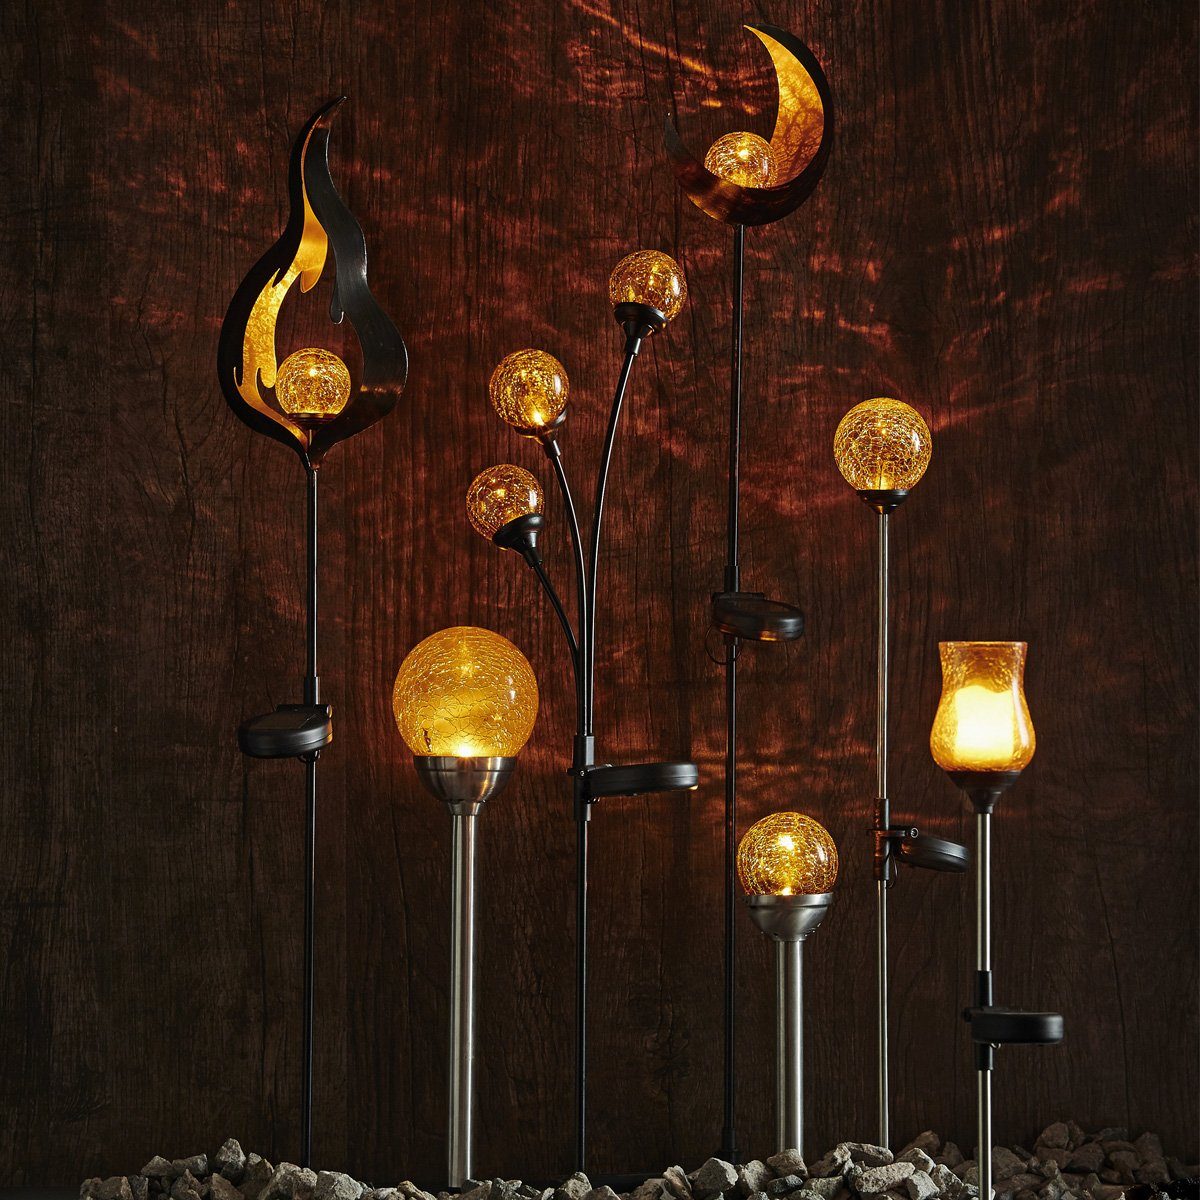 Gartenspieß Set, 26,5cm Classic, - Gartenstrahler - Solarkugel Lichtsensor LED TRADING LED - 2er gelb - STAR LED amber